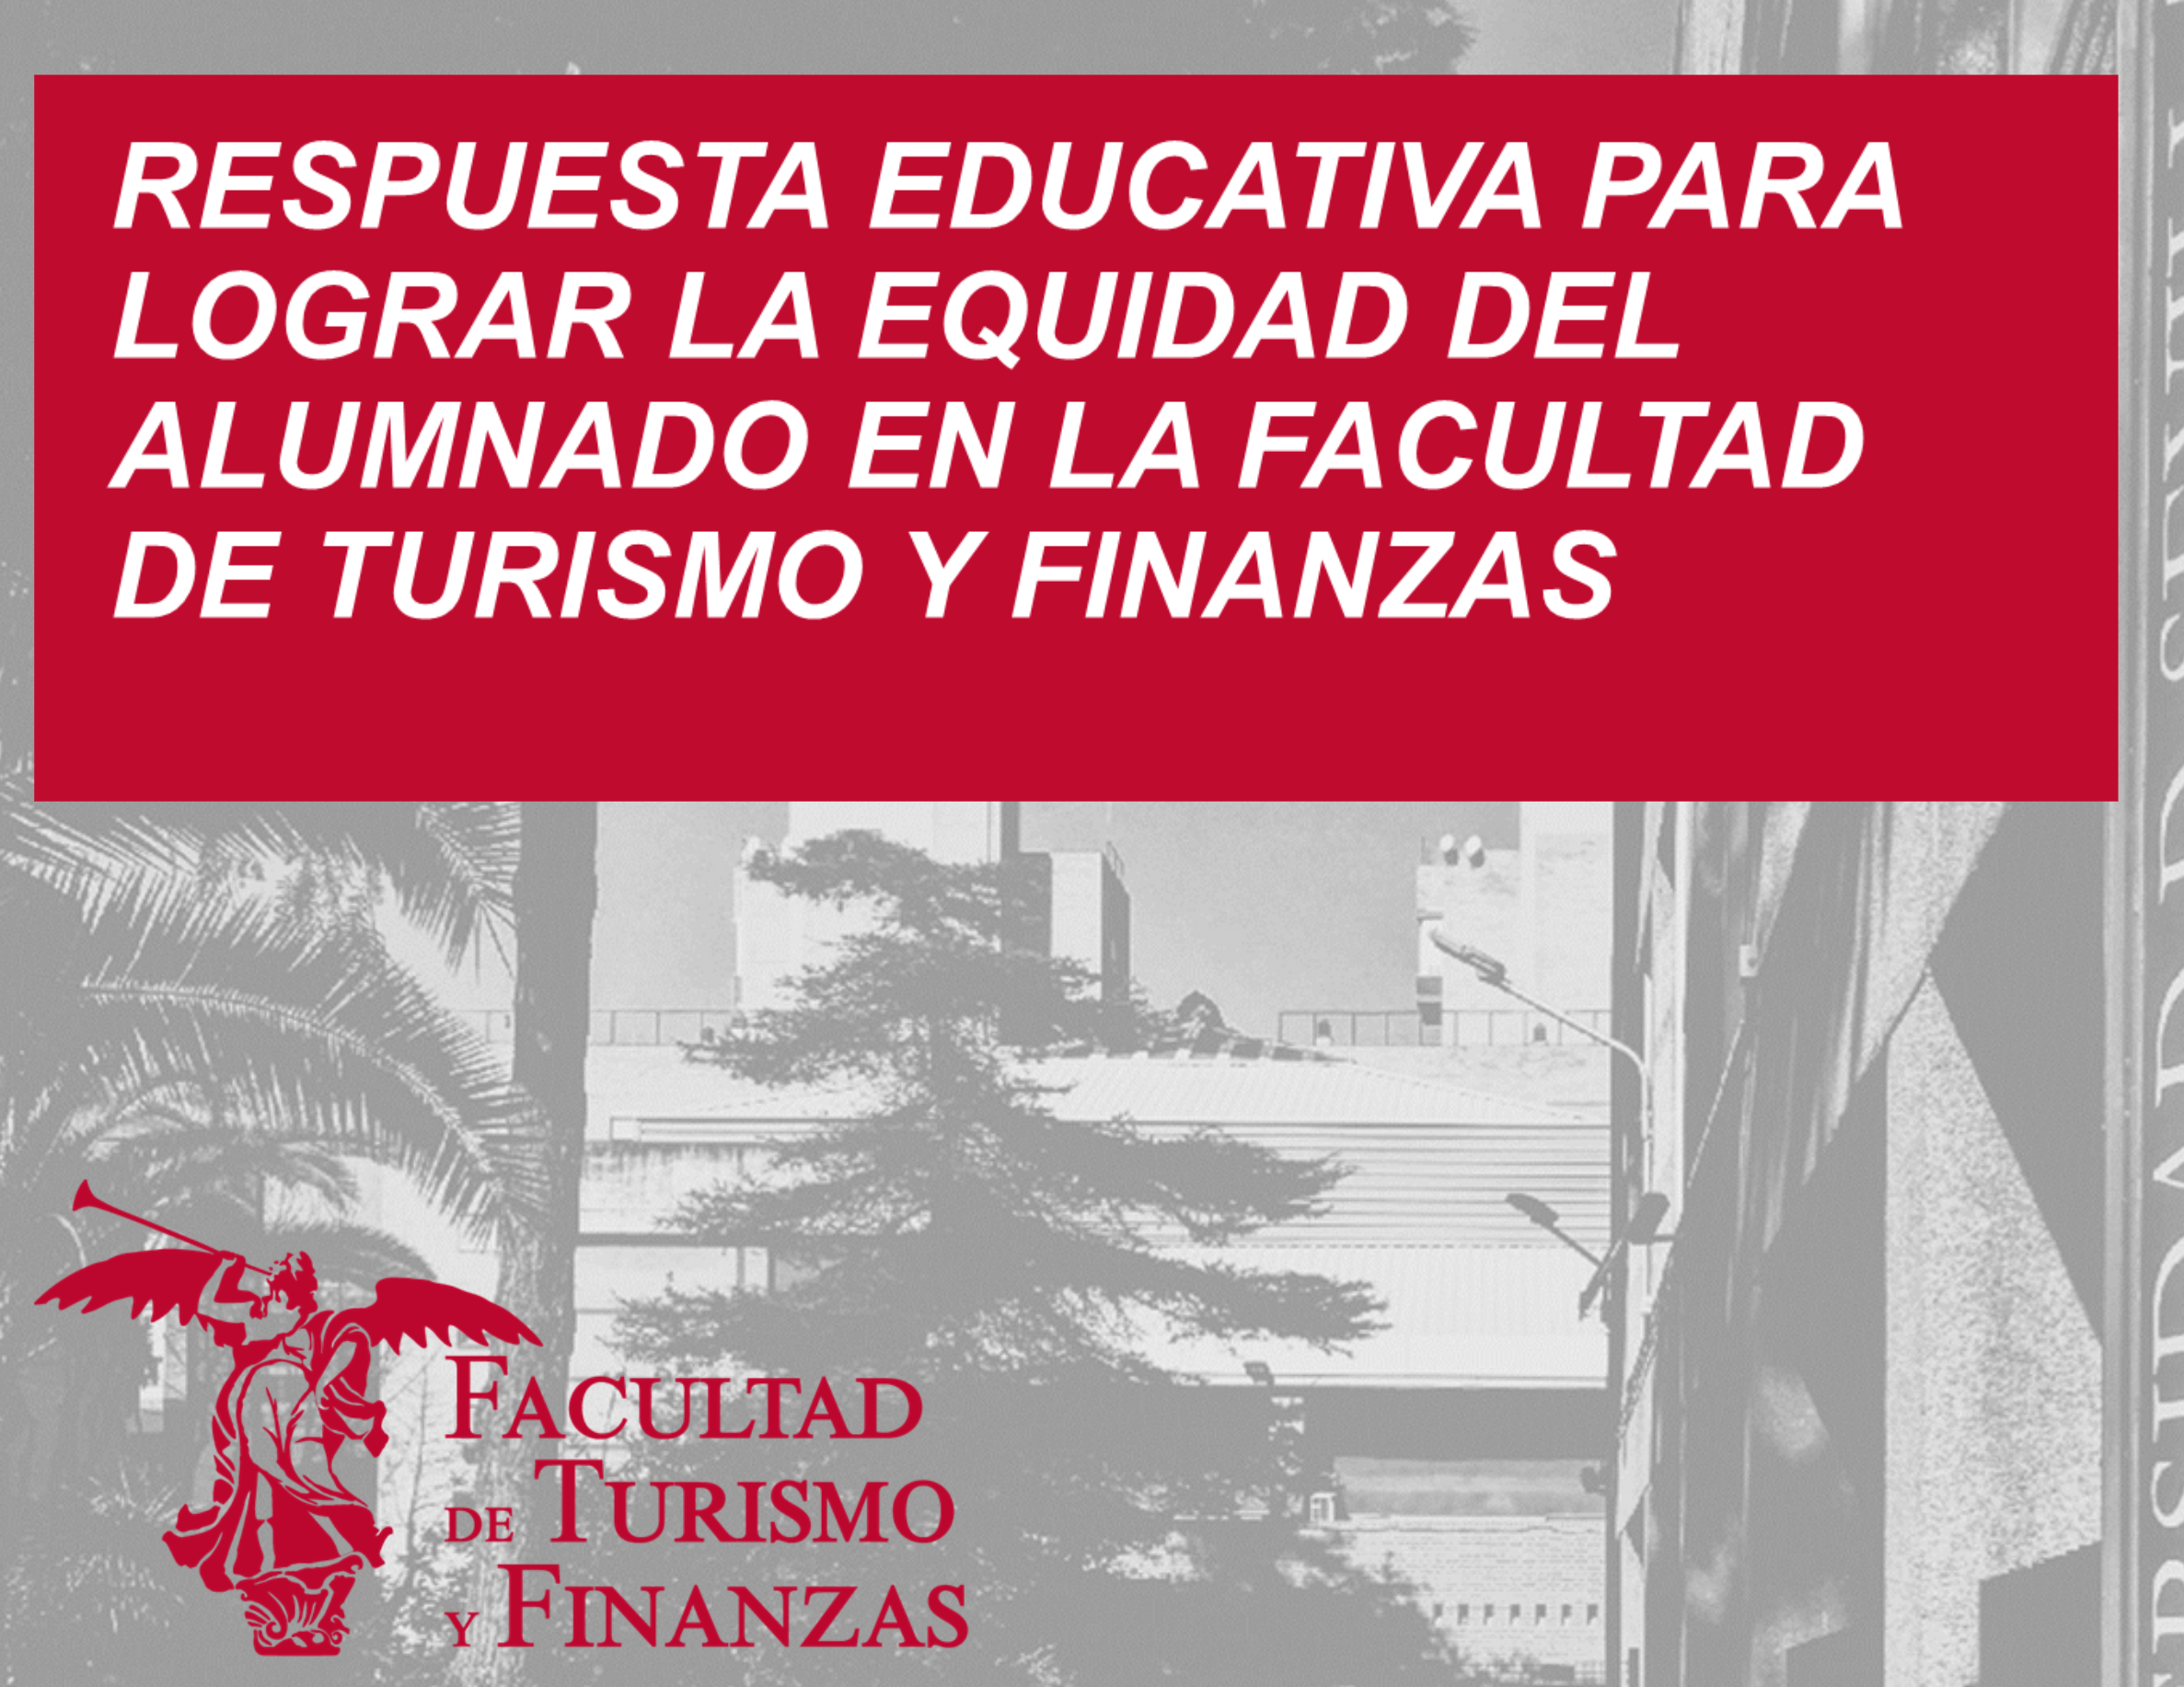 Respuestas educativas para lograr la equidad del alumnado en la Facultad de Turismo y Finanzas